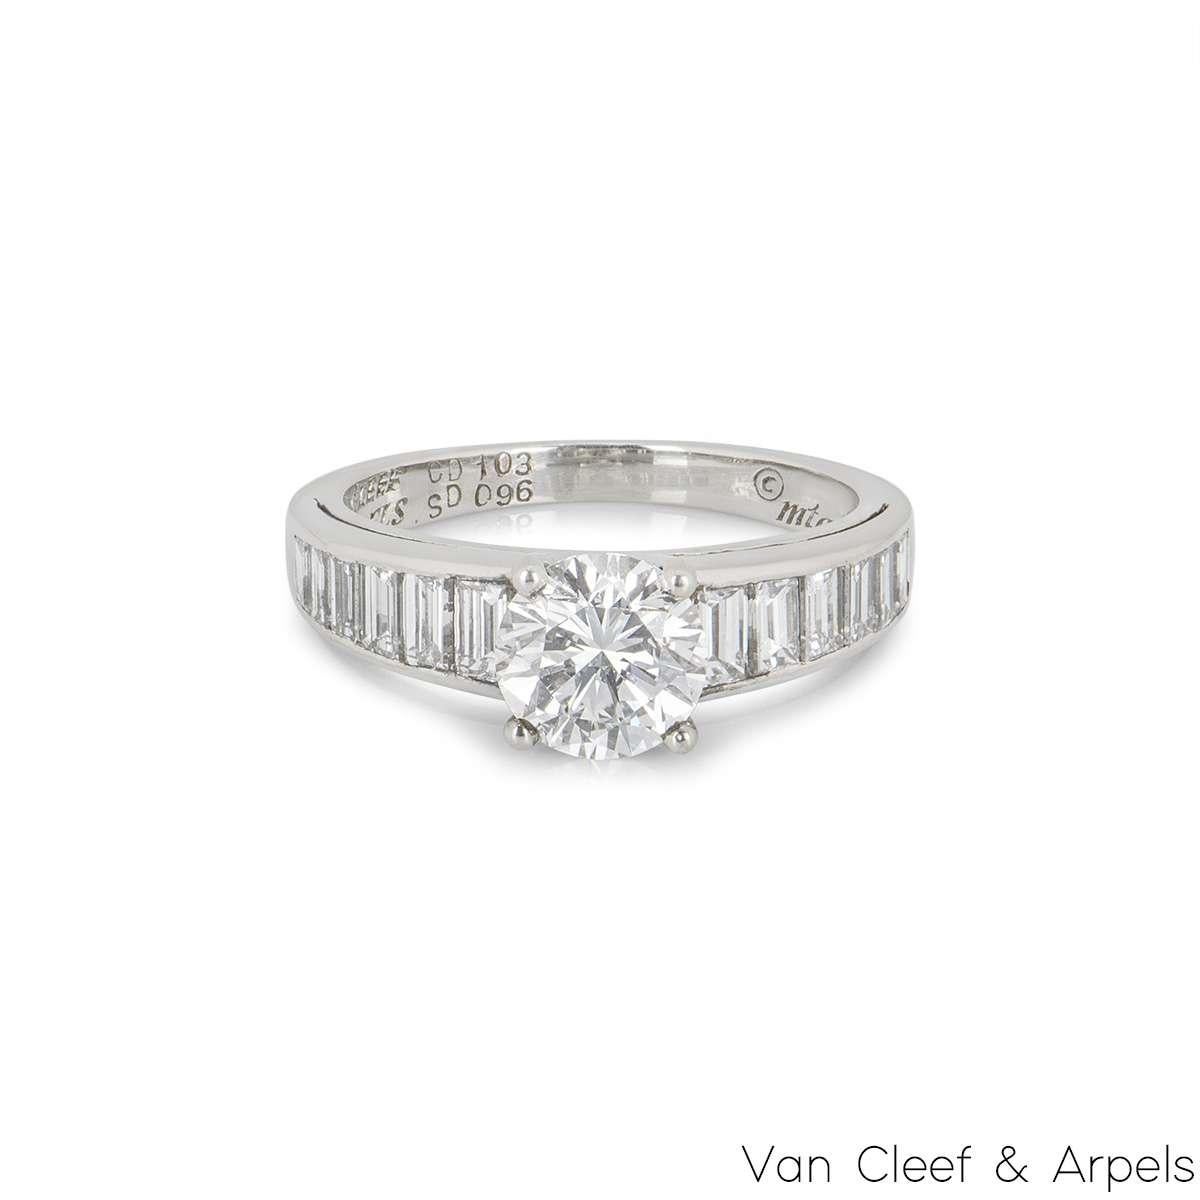 Van Cleef & Arpels Verlobungsring mit 1,03 Karat Diamant im runden Brillantschliff, IGR-zertifiziert (Rundschliff) im Angebot